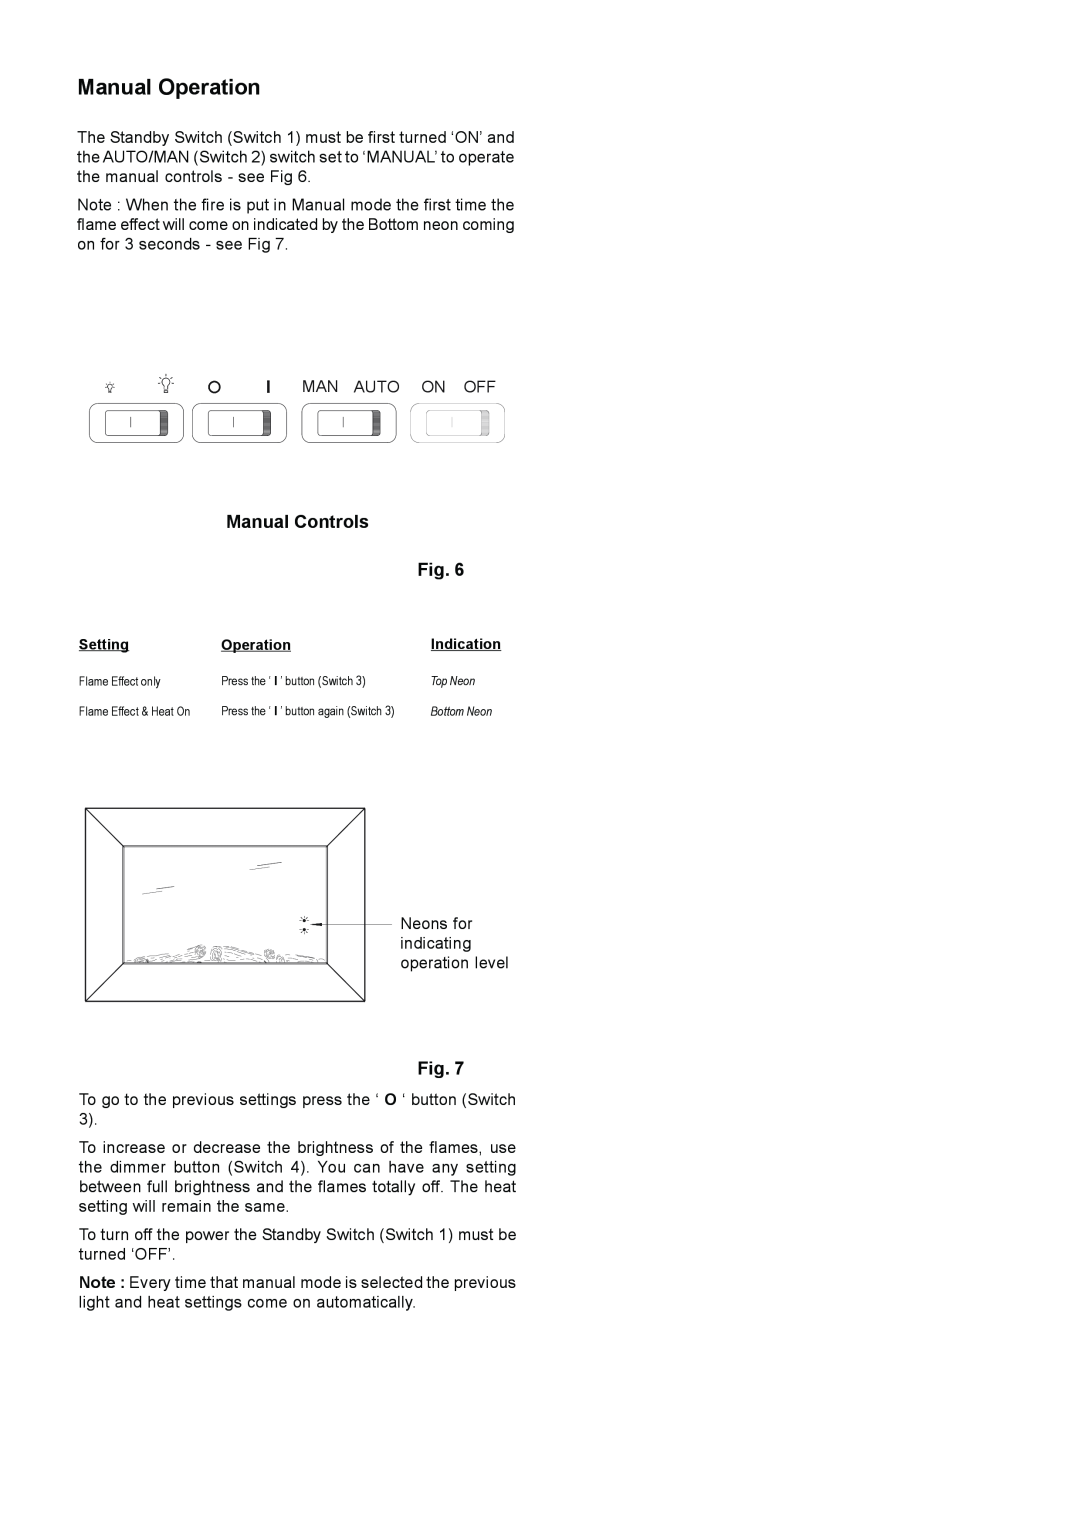 Dimplex SP420 dimensions Manual Operation, Manual Controls 